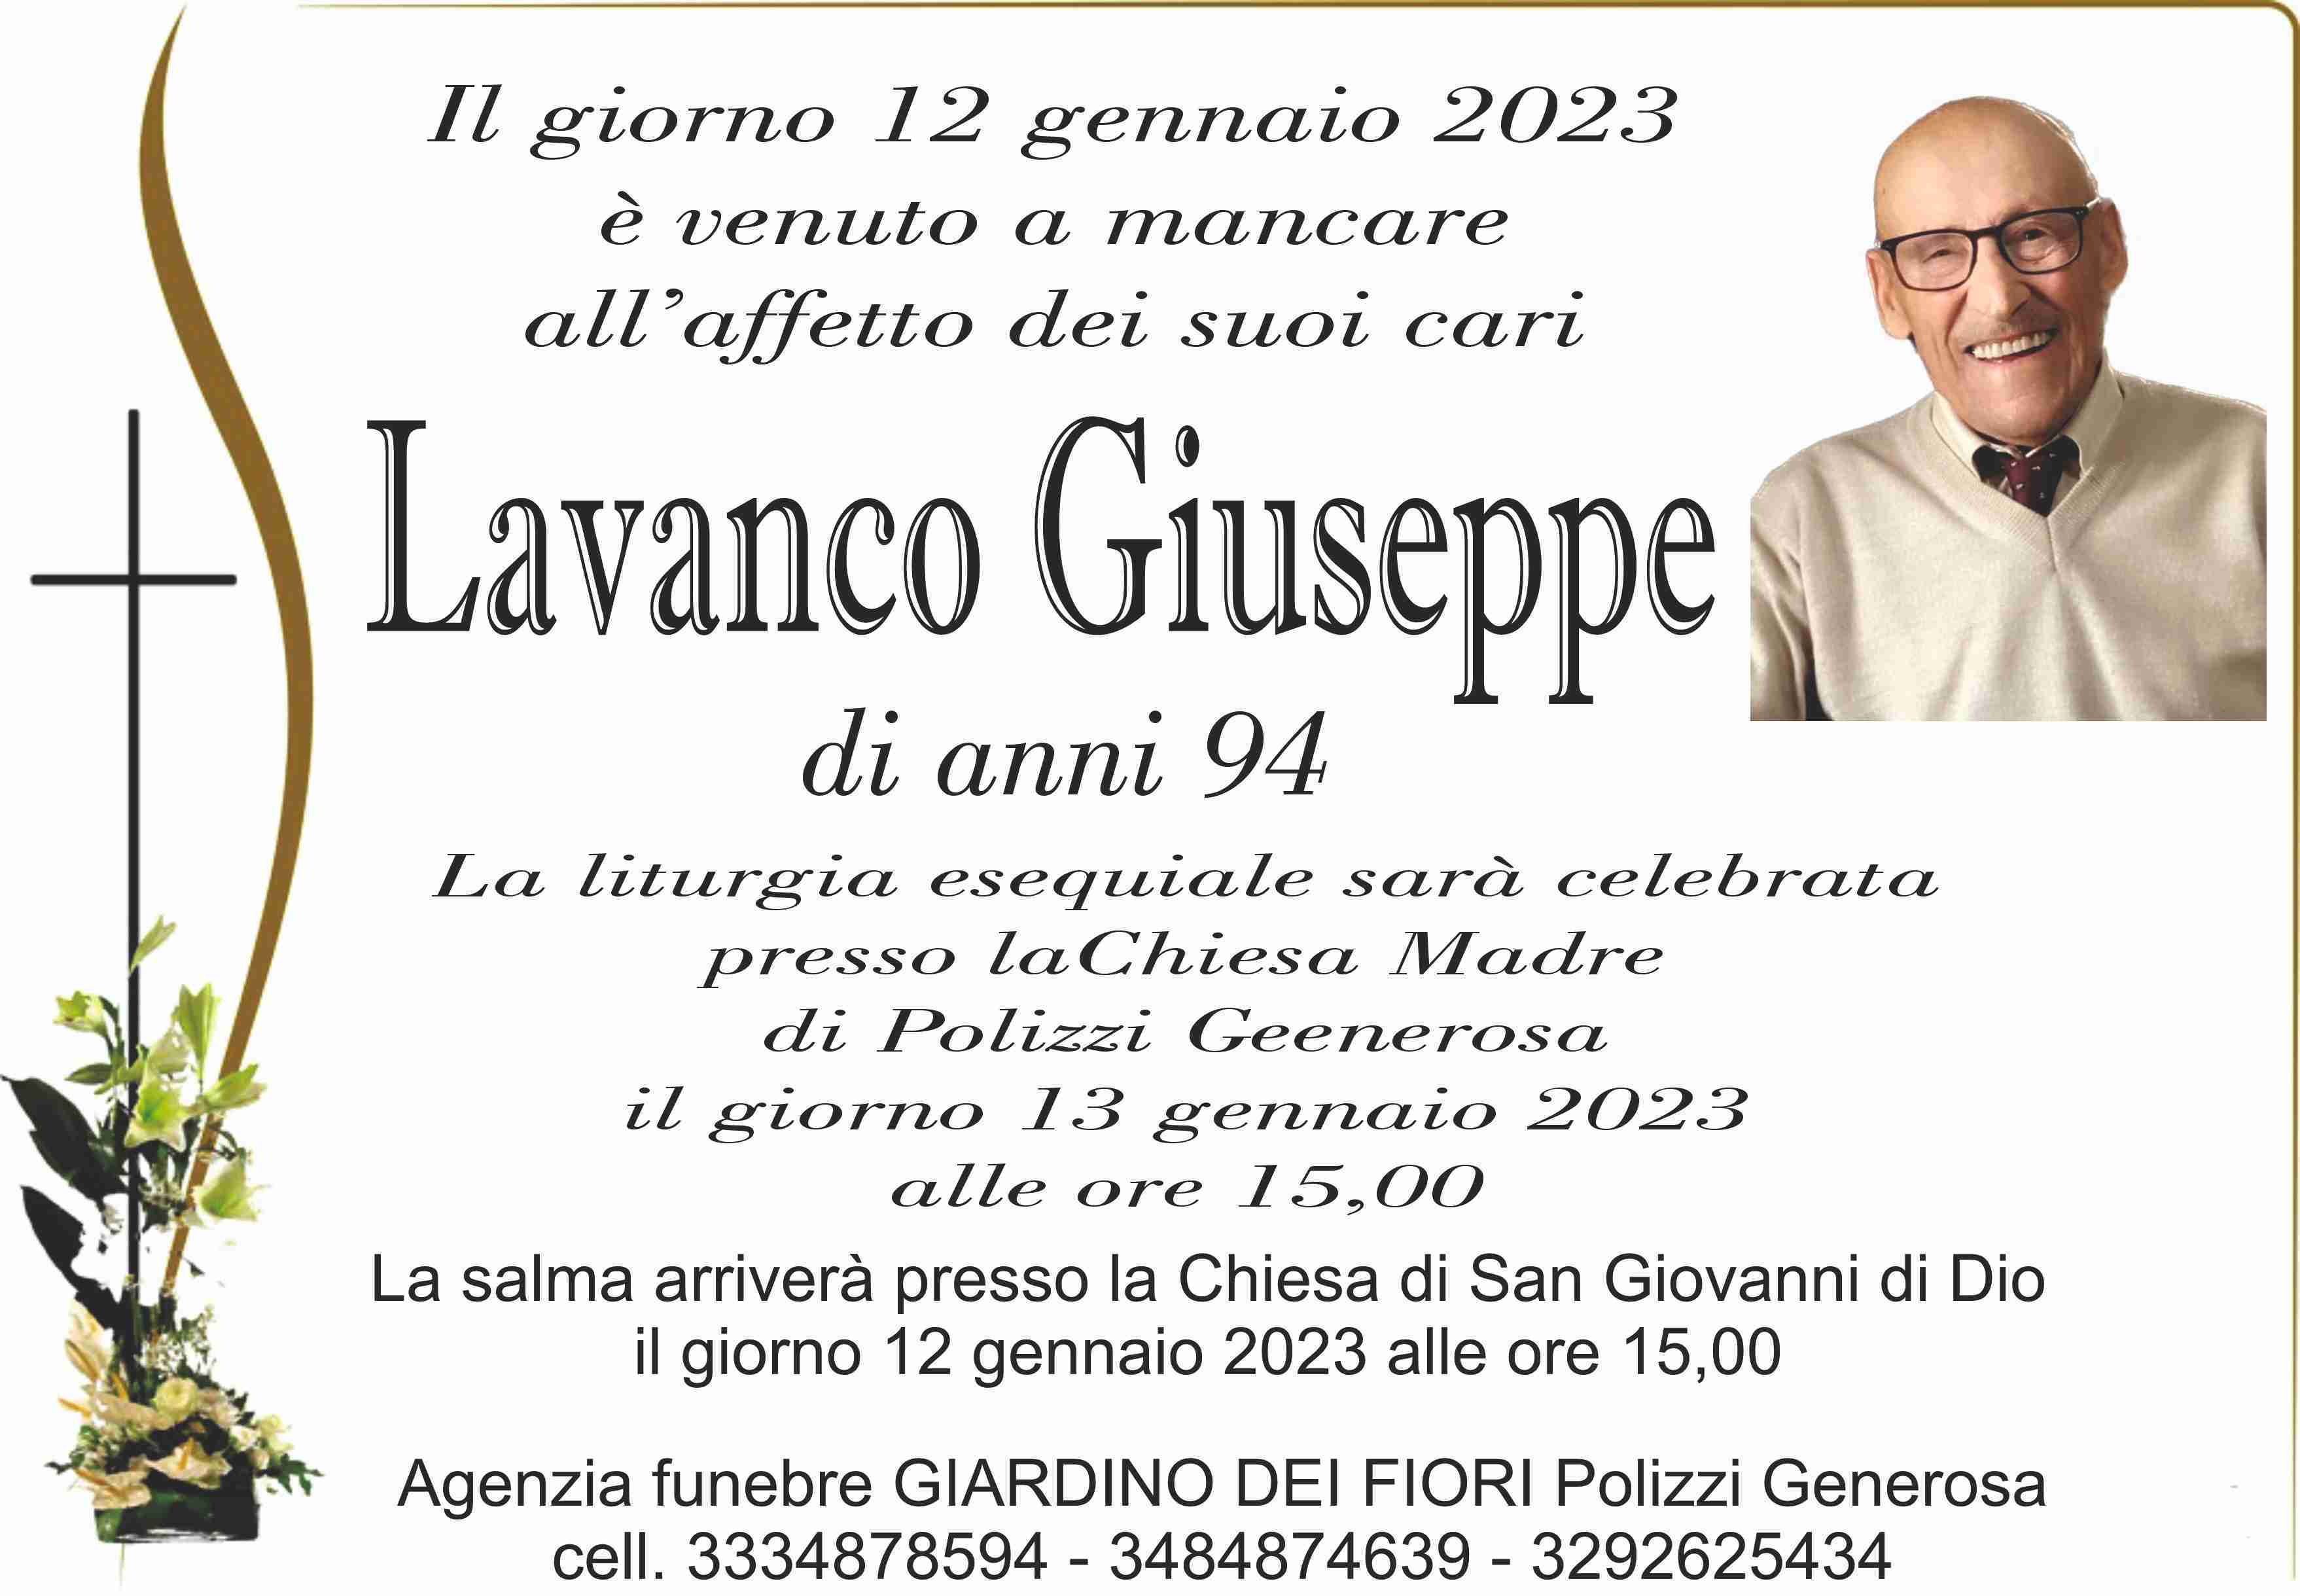 Giuseppe Lavanco